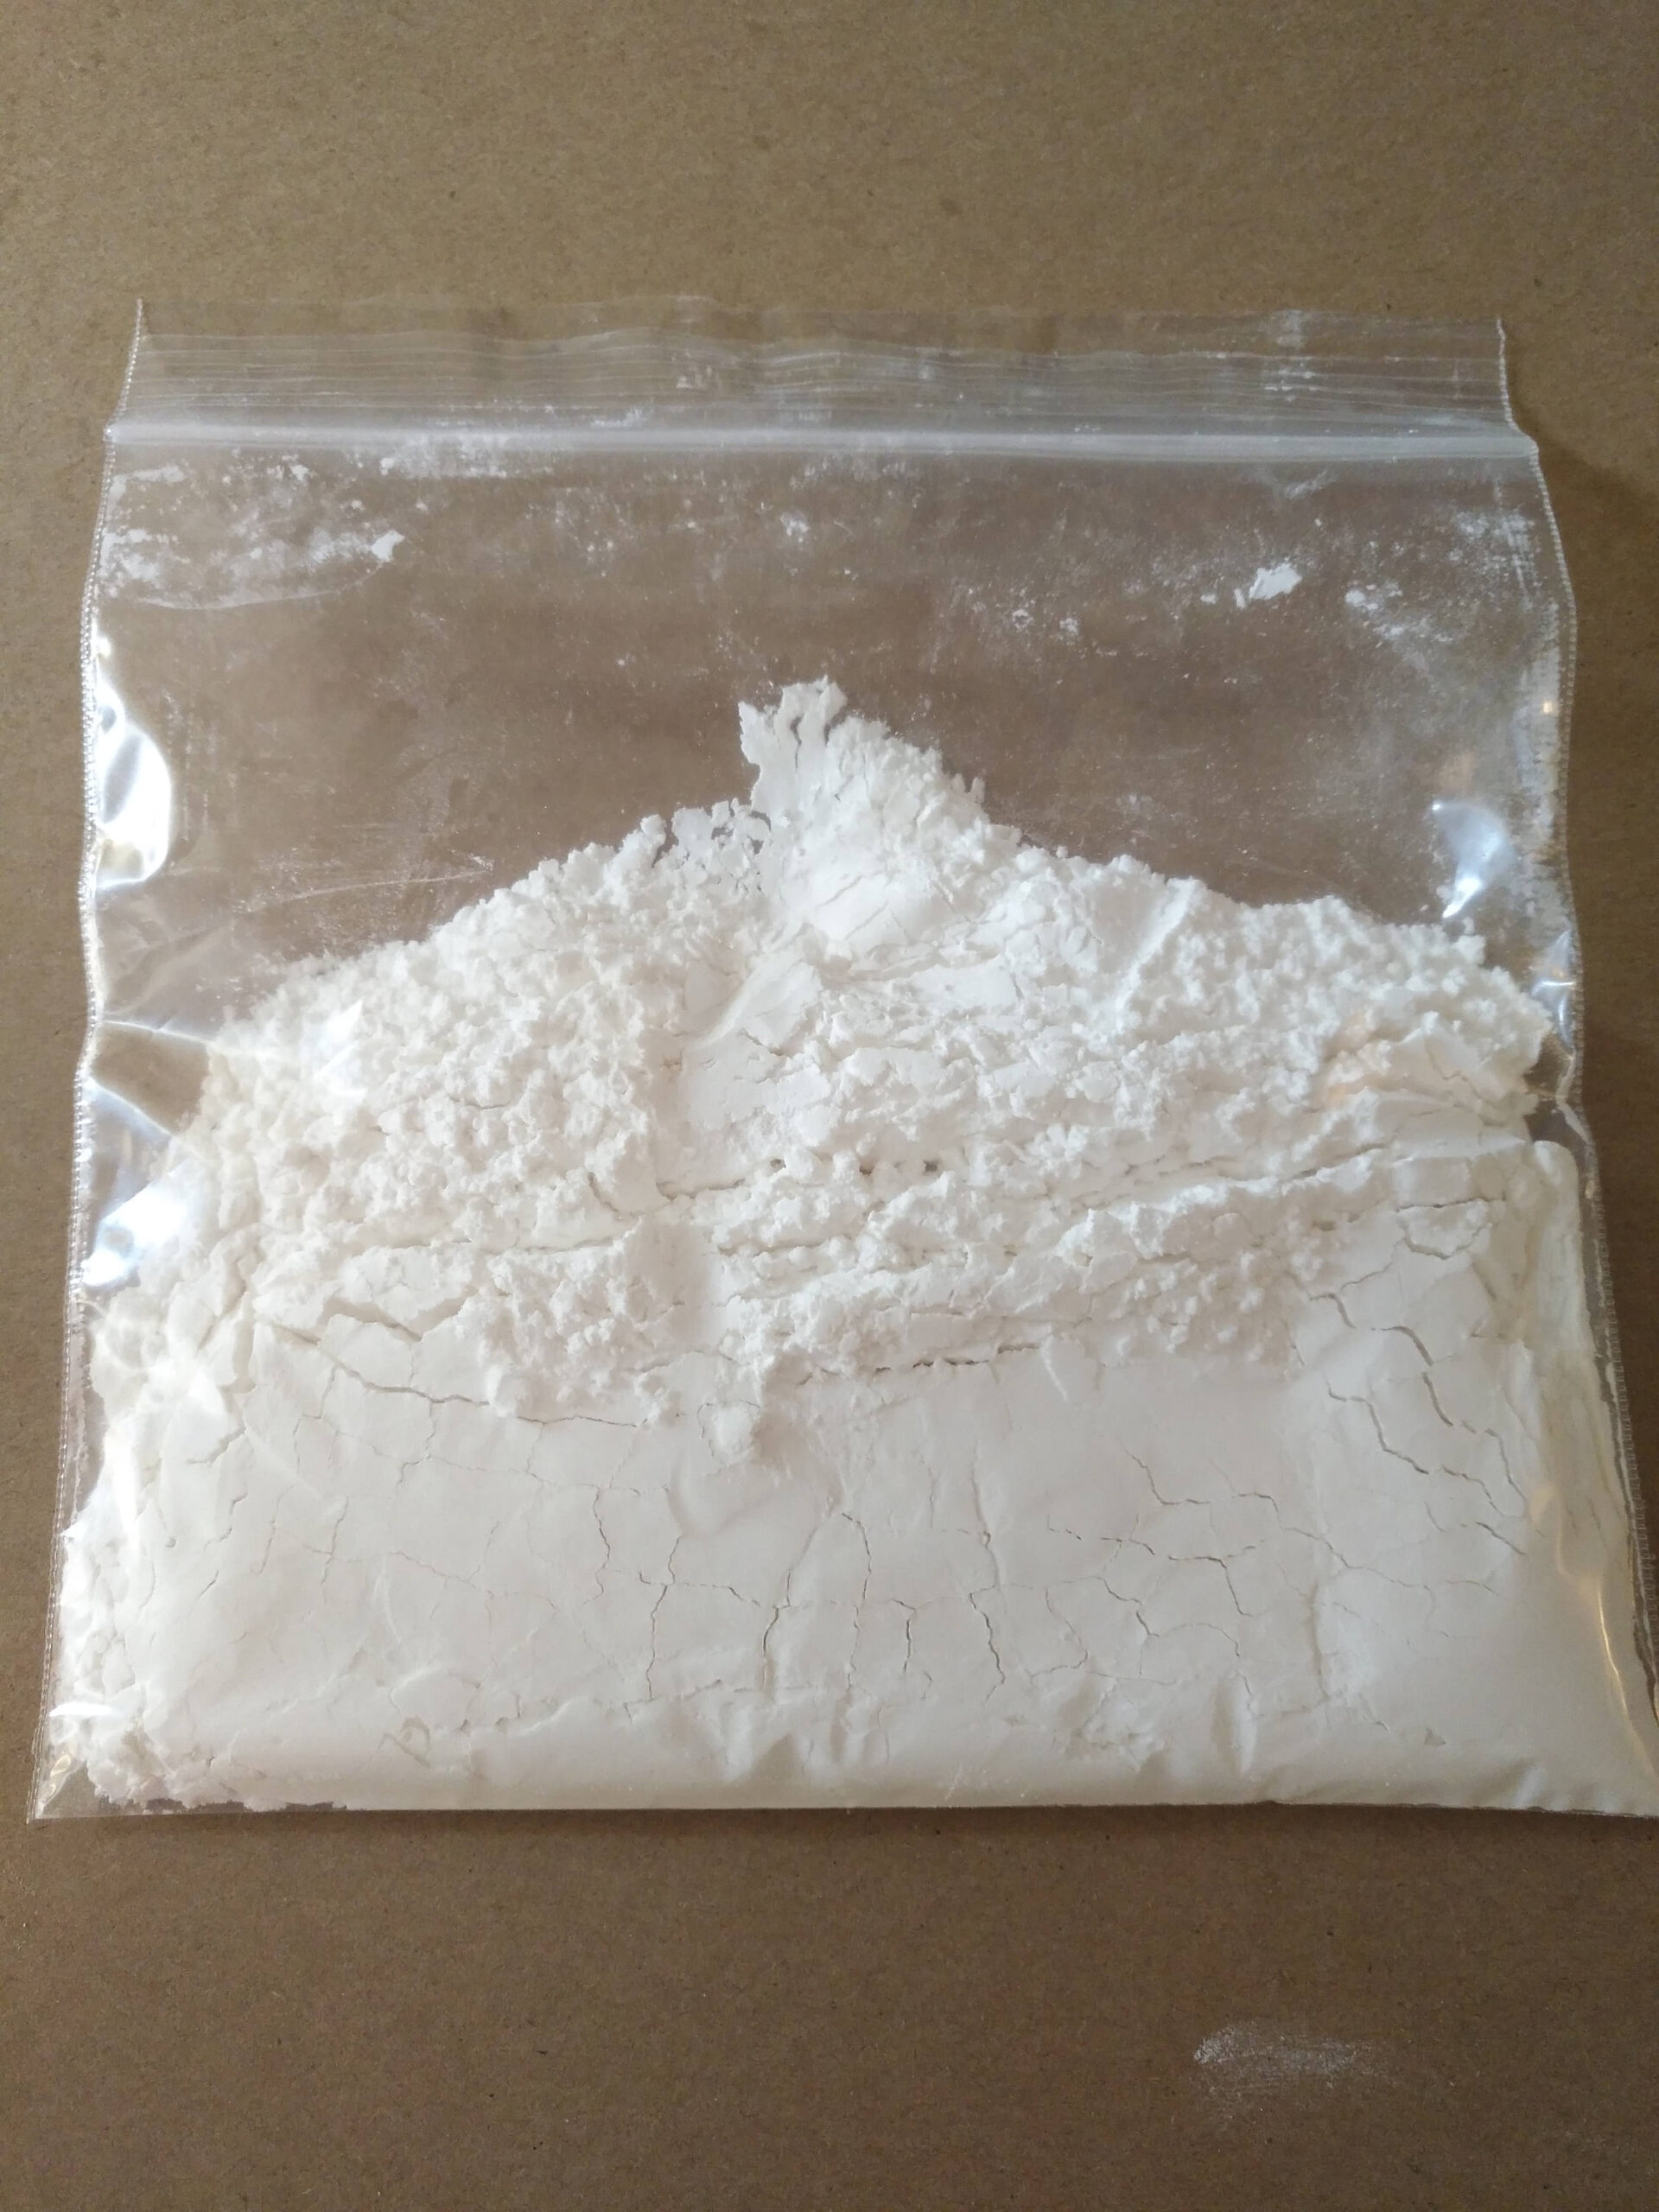 Cocaine For Sale In Australia